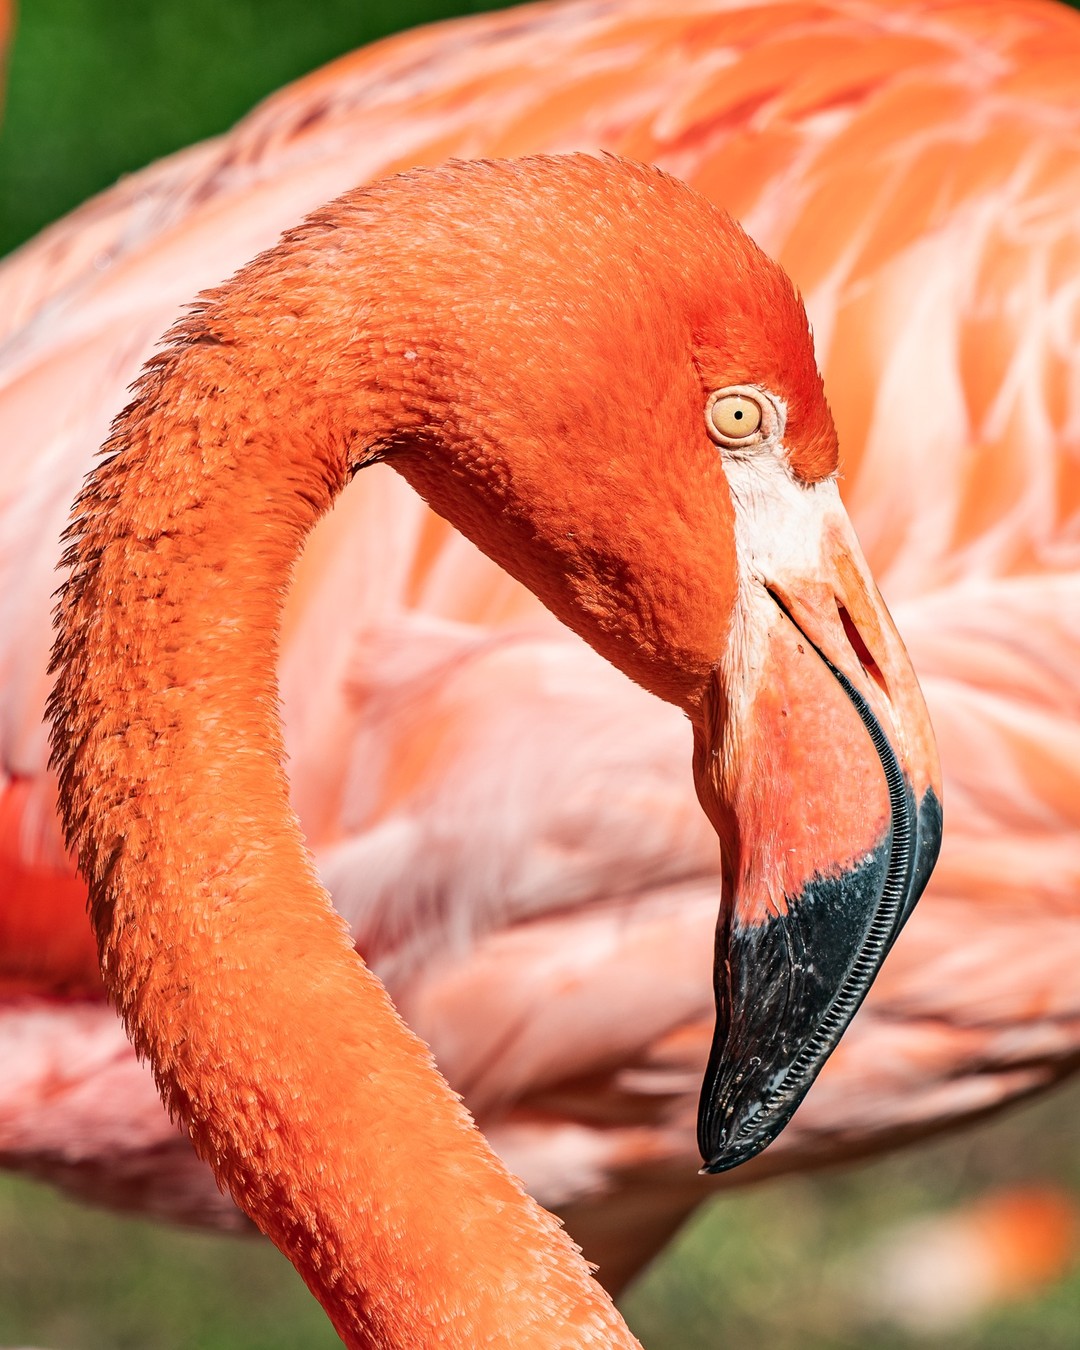 Diese Farbe... Ich finde ja die Augen der Flamingos recht beeindruckend.

#sony #sonya7riii #ilce7rm3 #sonyphotography #sony200600mm #photooftheday #nature #naturephotography #zoofotografie #animals #zooanimalsofinstagram #tierpark #zoo #animalphotography #zooanimal #zoopark #zoophoto #fotografie #rostock #rostockzoo #zoorostock #tierfotografie #naturliebe #tierliebe #einhesseunterwegs #flamingo #augen